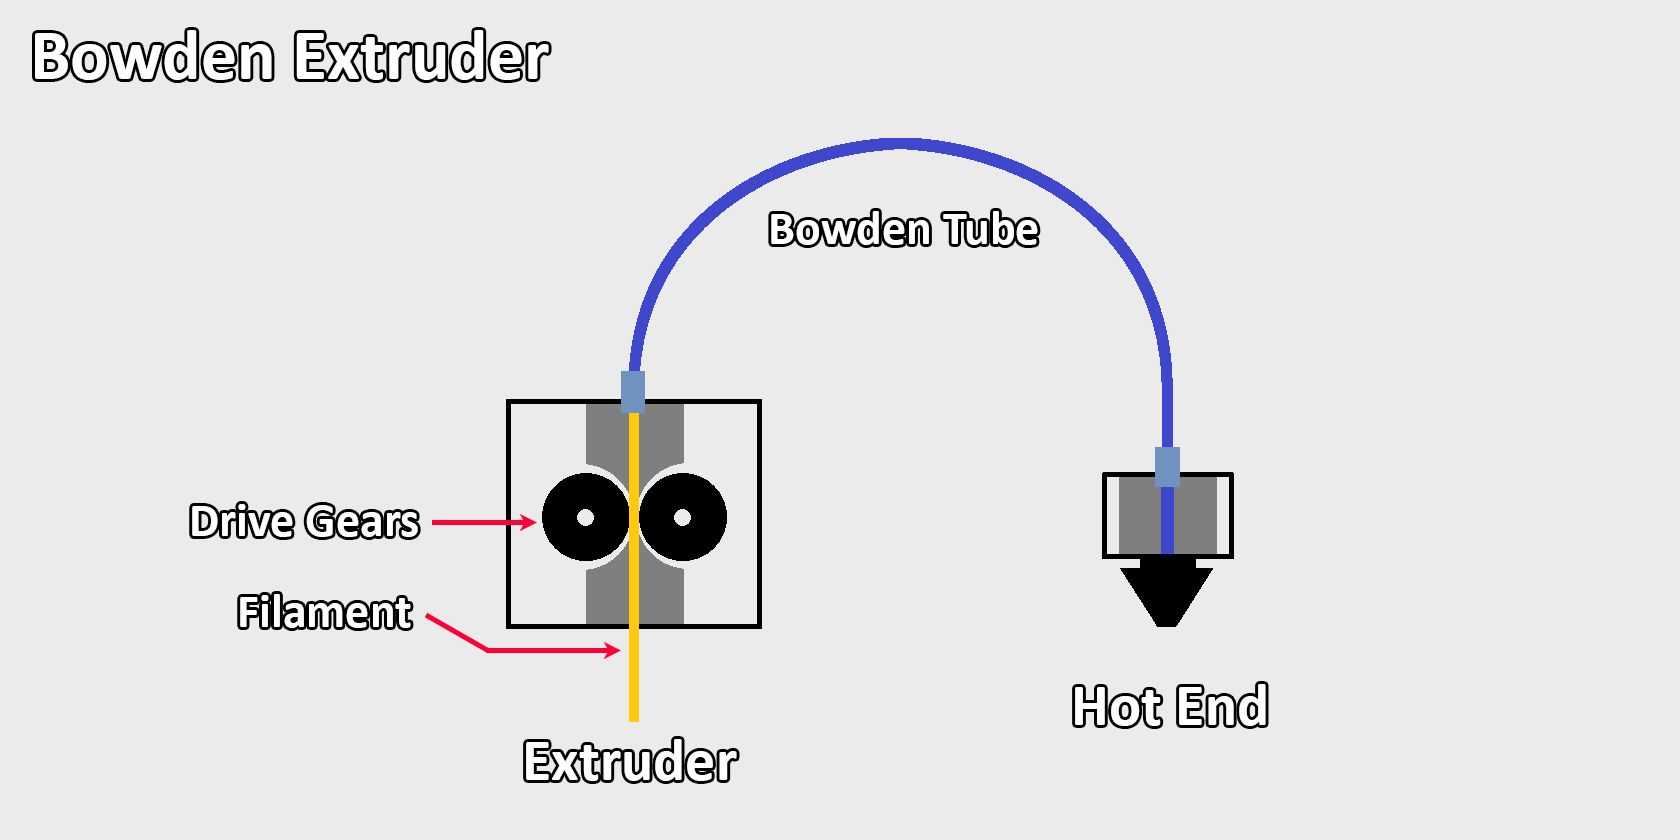 Illustration of Bowden extruder